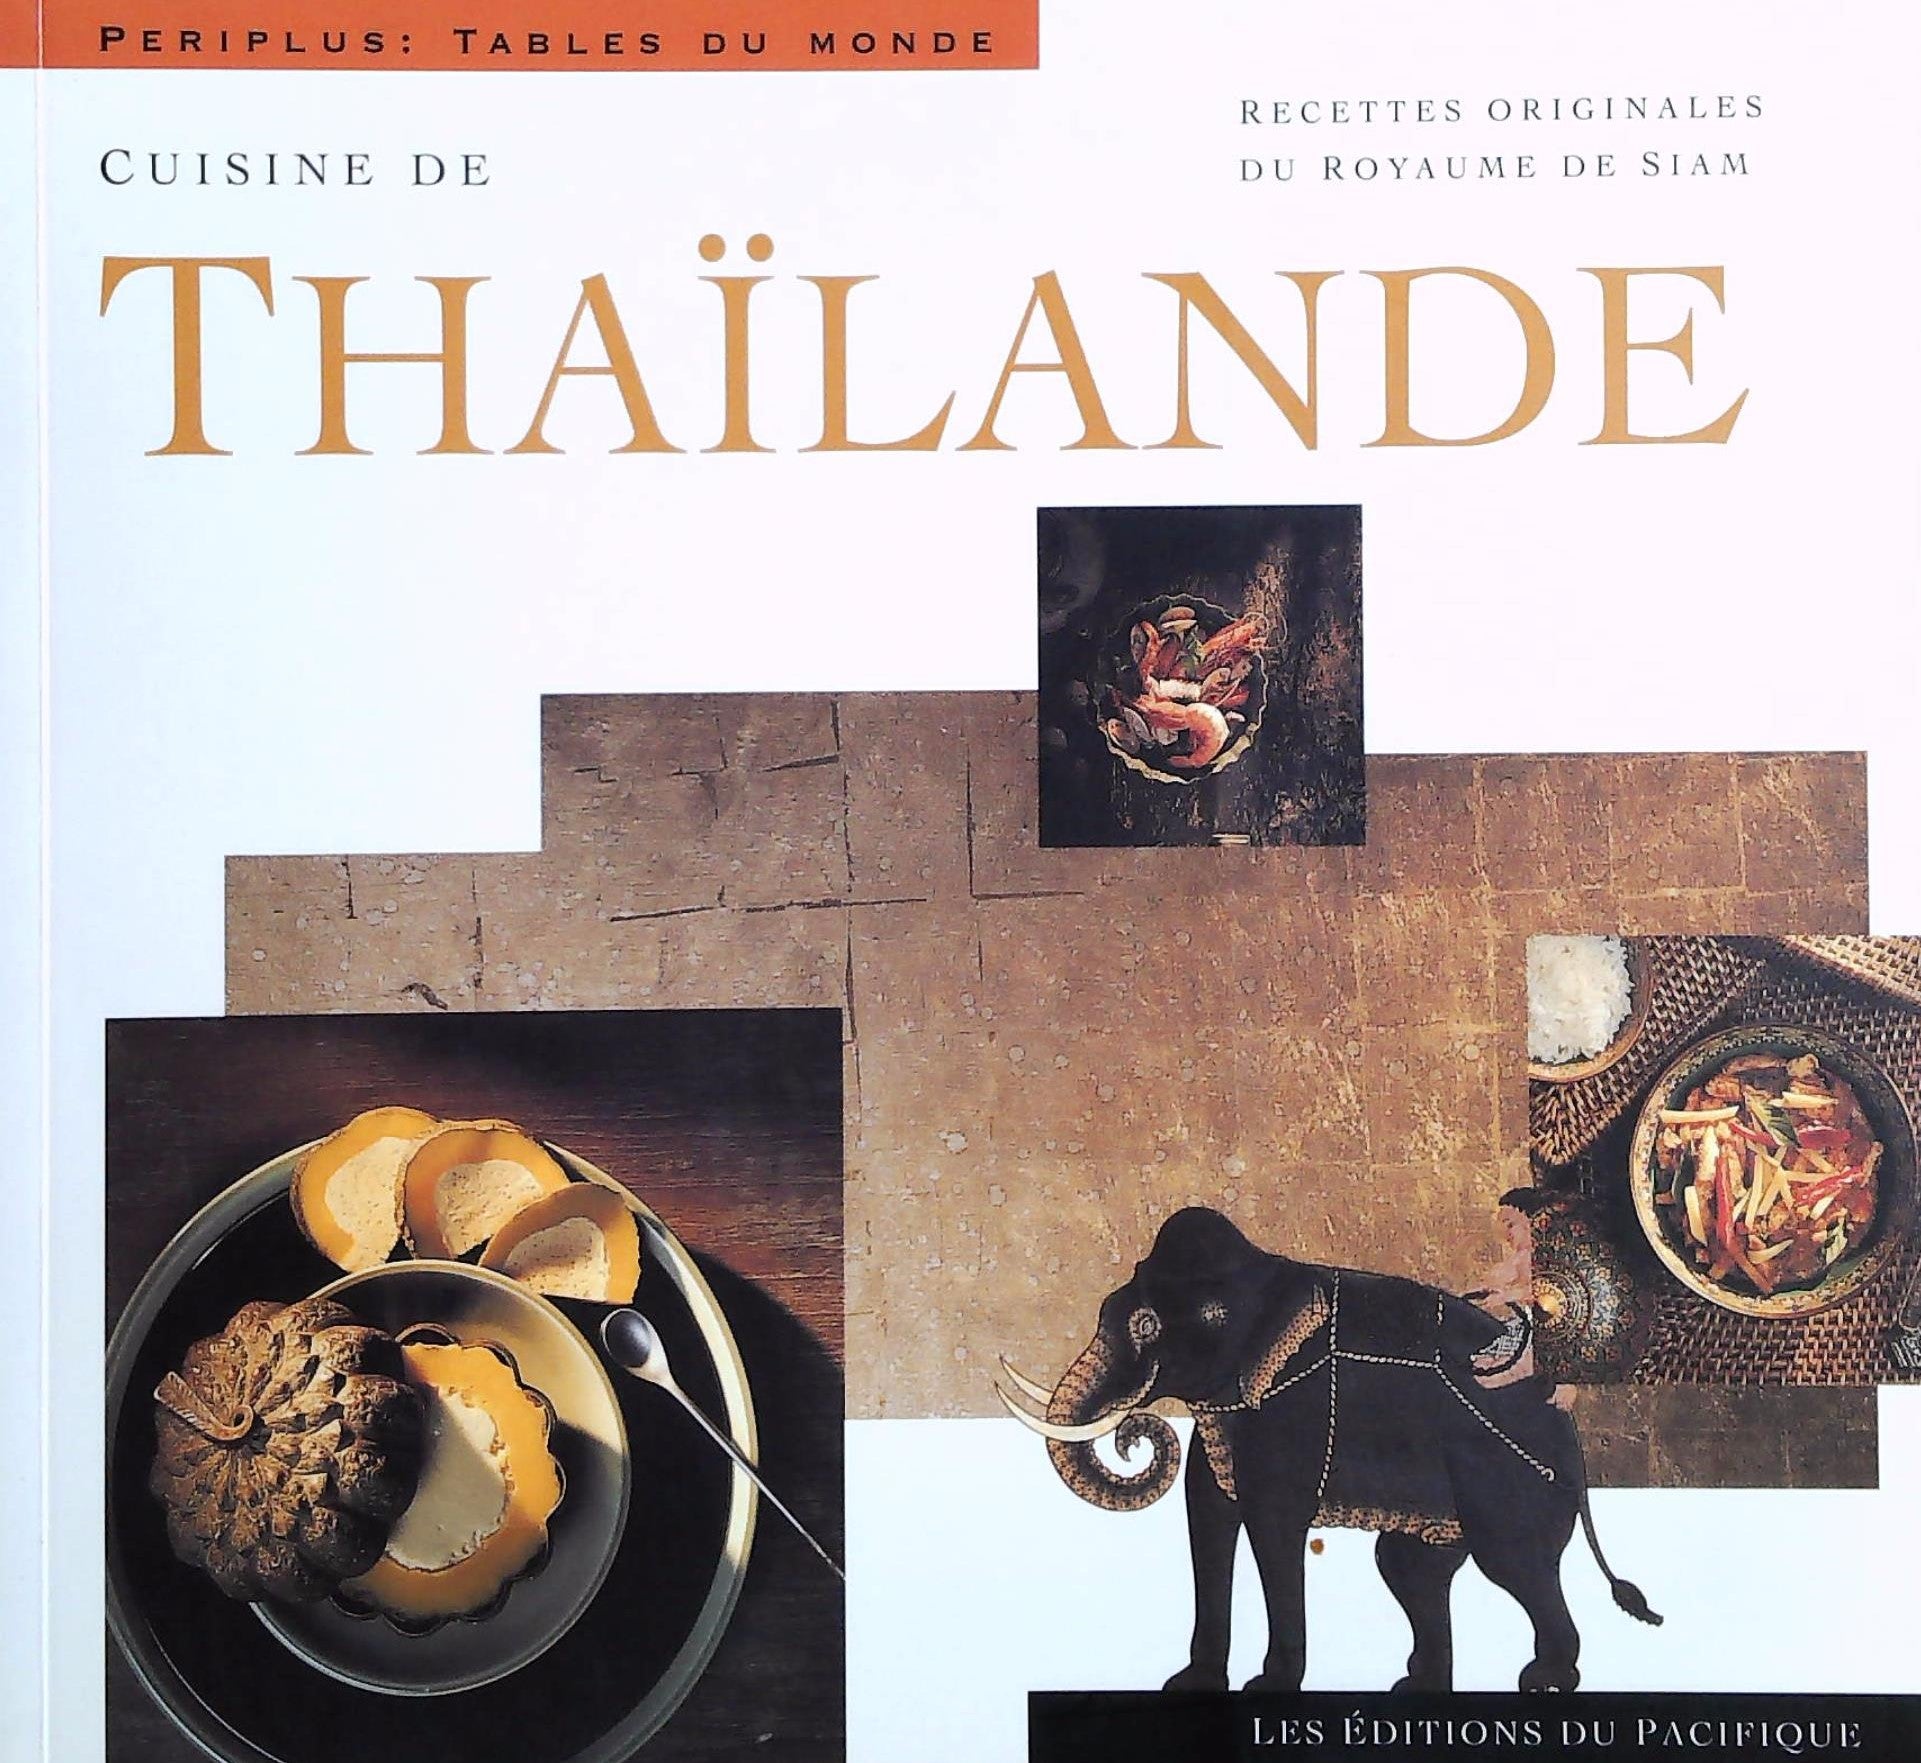 Livre ISBN 2878680235 Periplus: Tables du monde : Cuisine de Thaïlande : Recettes originales du royaume de Siam